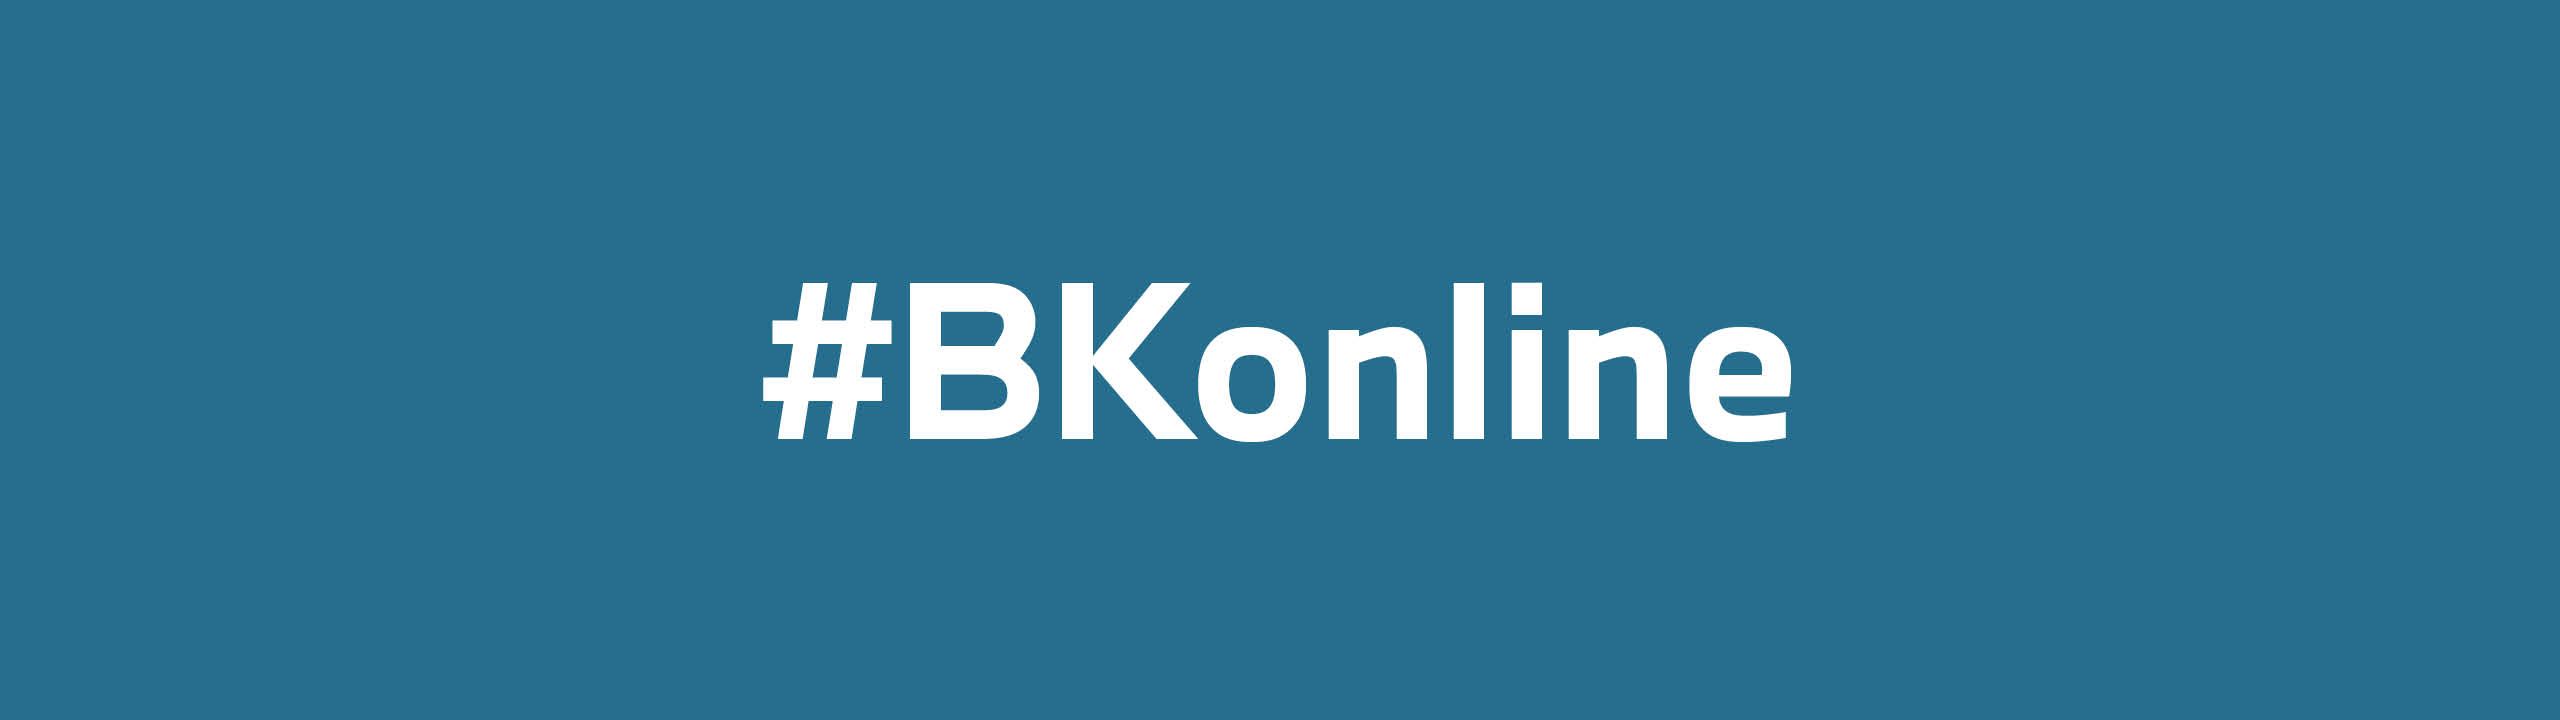 Weiße Schrift auf blauen Untergrund "BKonline "